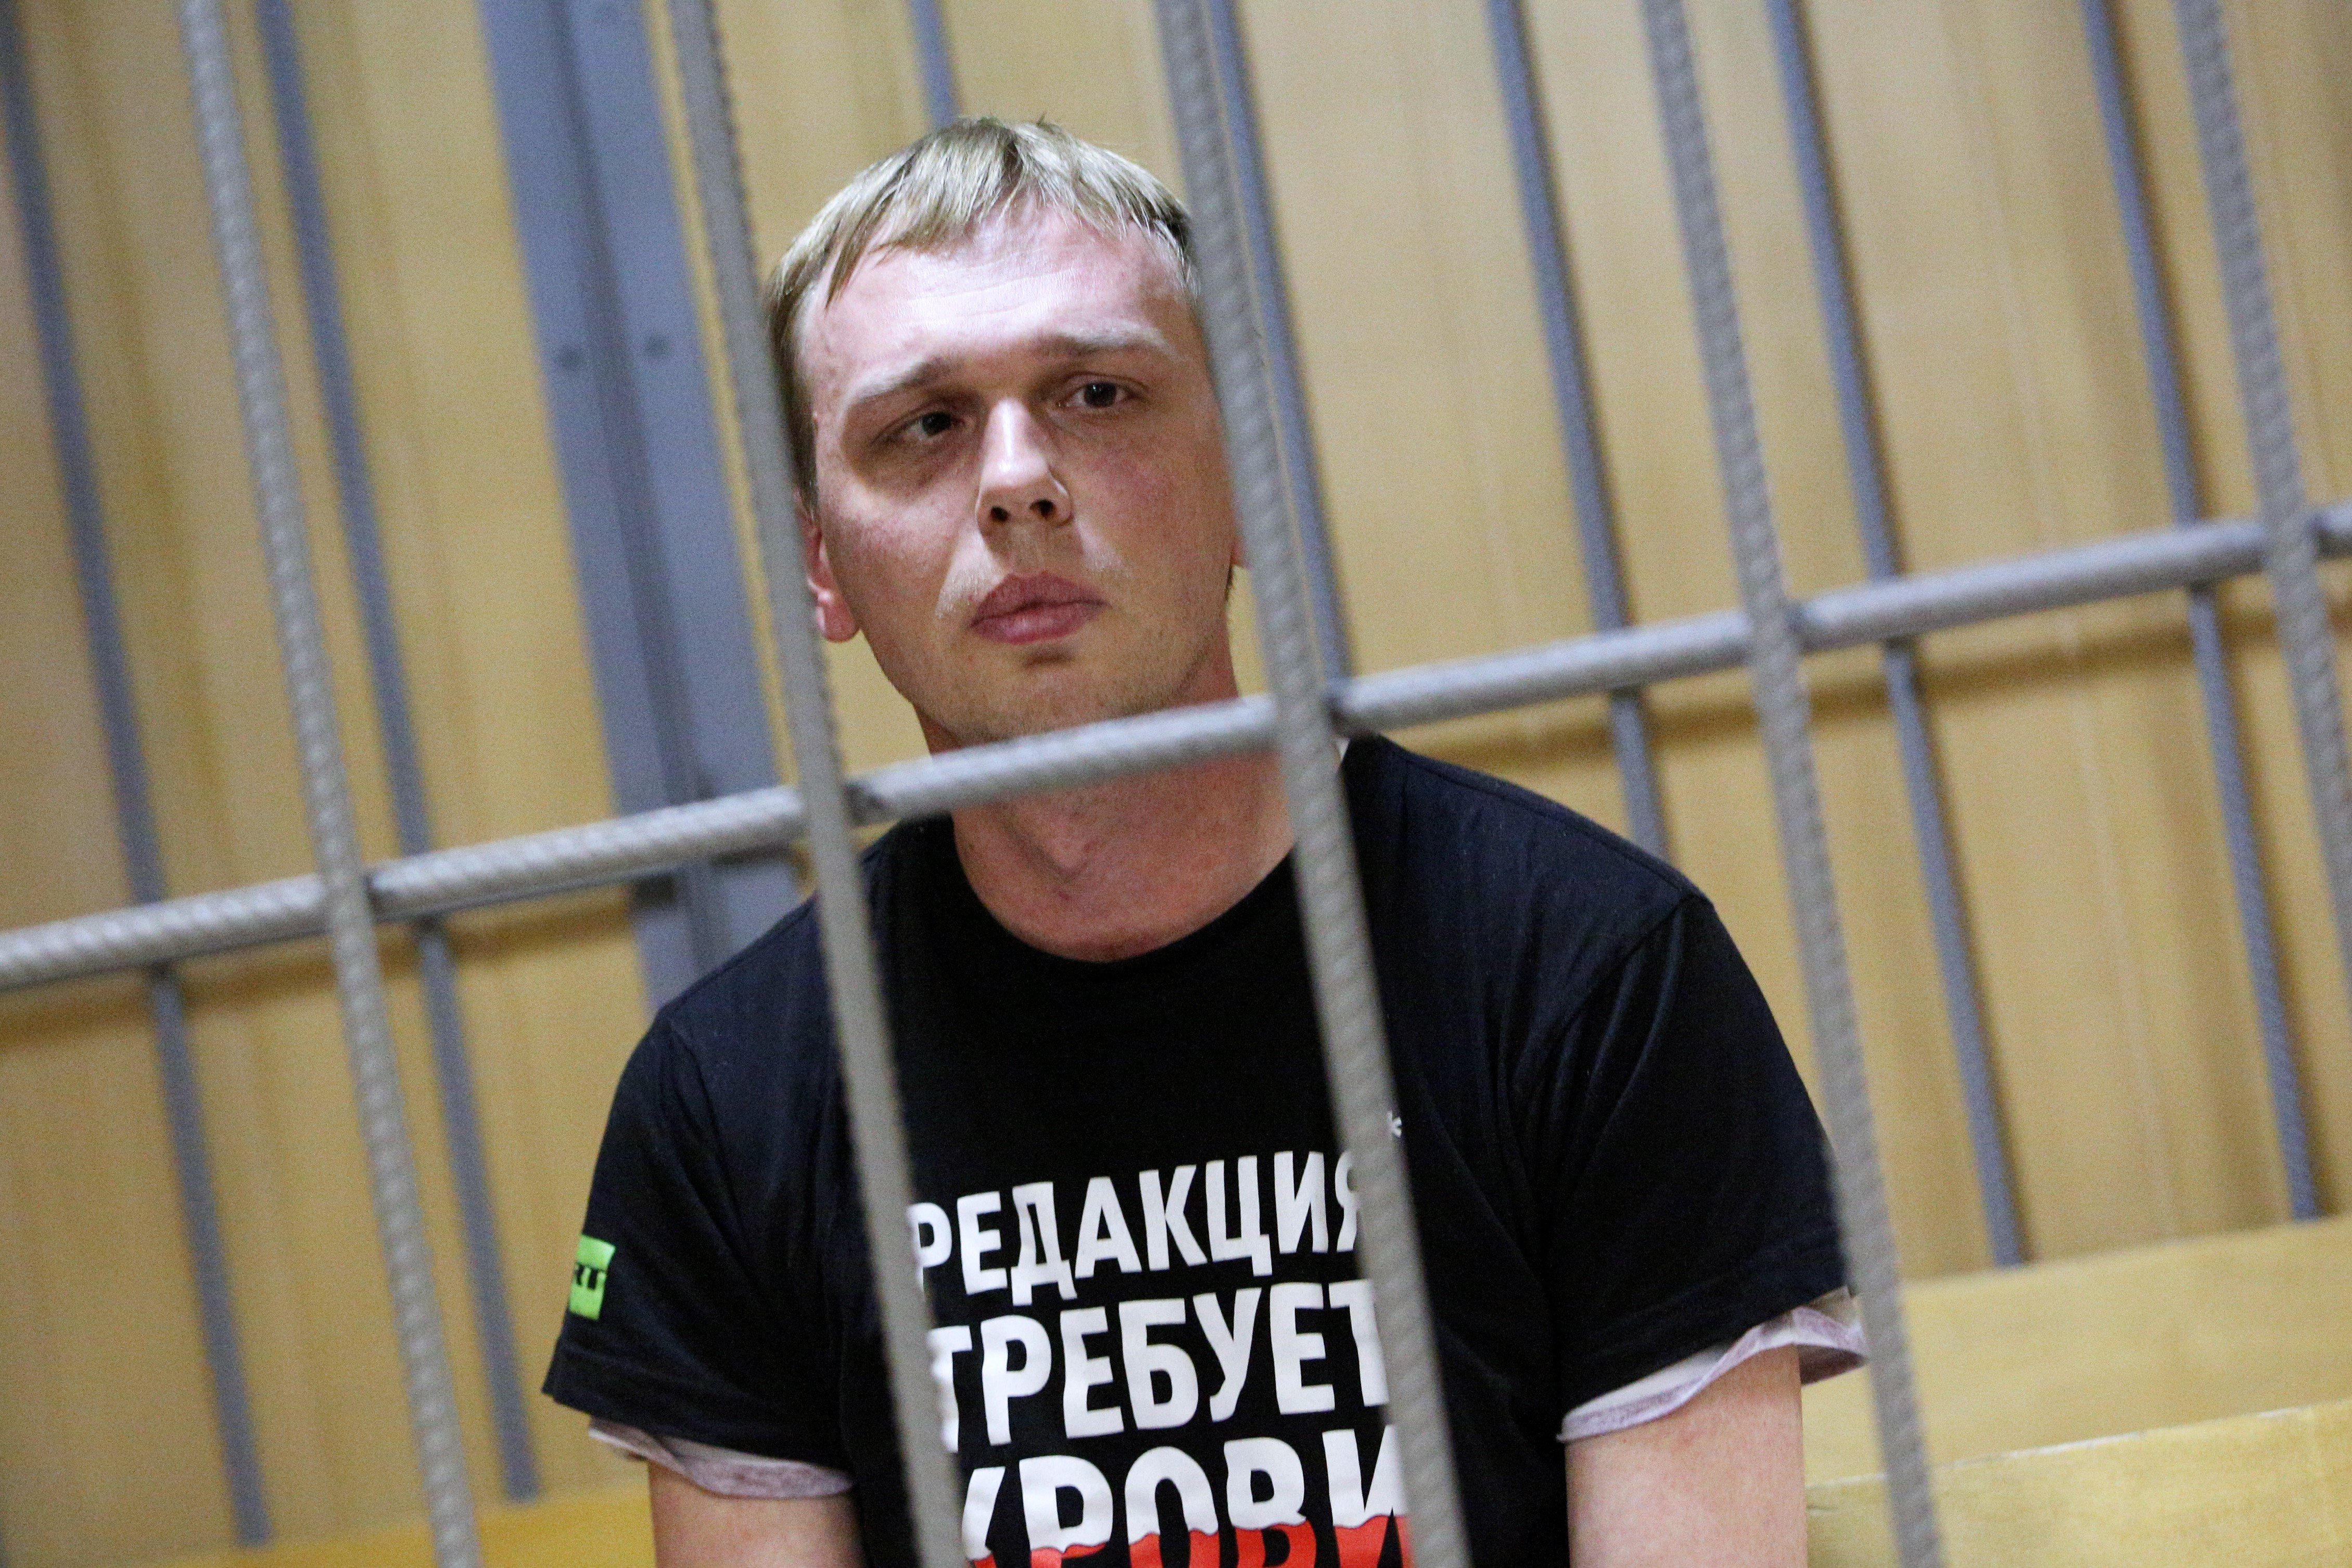 Обвиненный в хранении и сбыте наркотиков журналист пожелал, чтобы «государство говорило на человеческом языке» Фото: © Global Look Press / City News Moskva